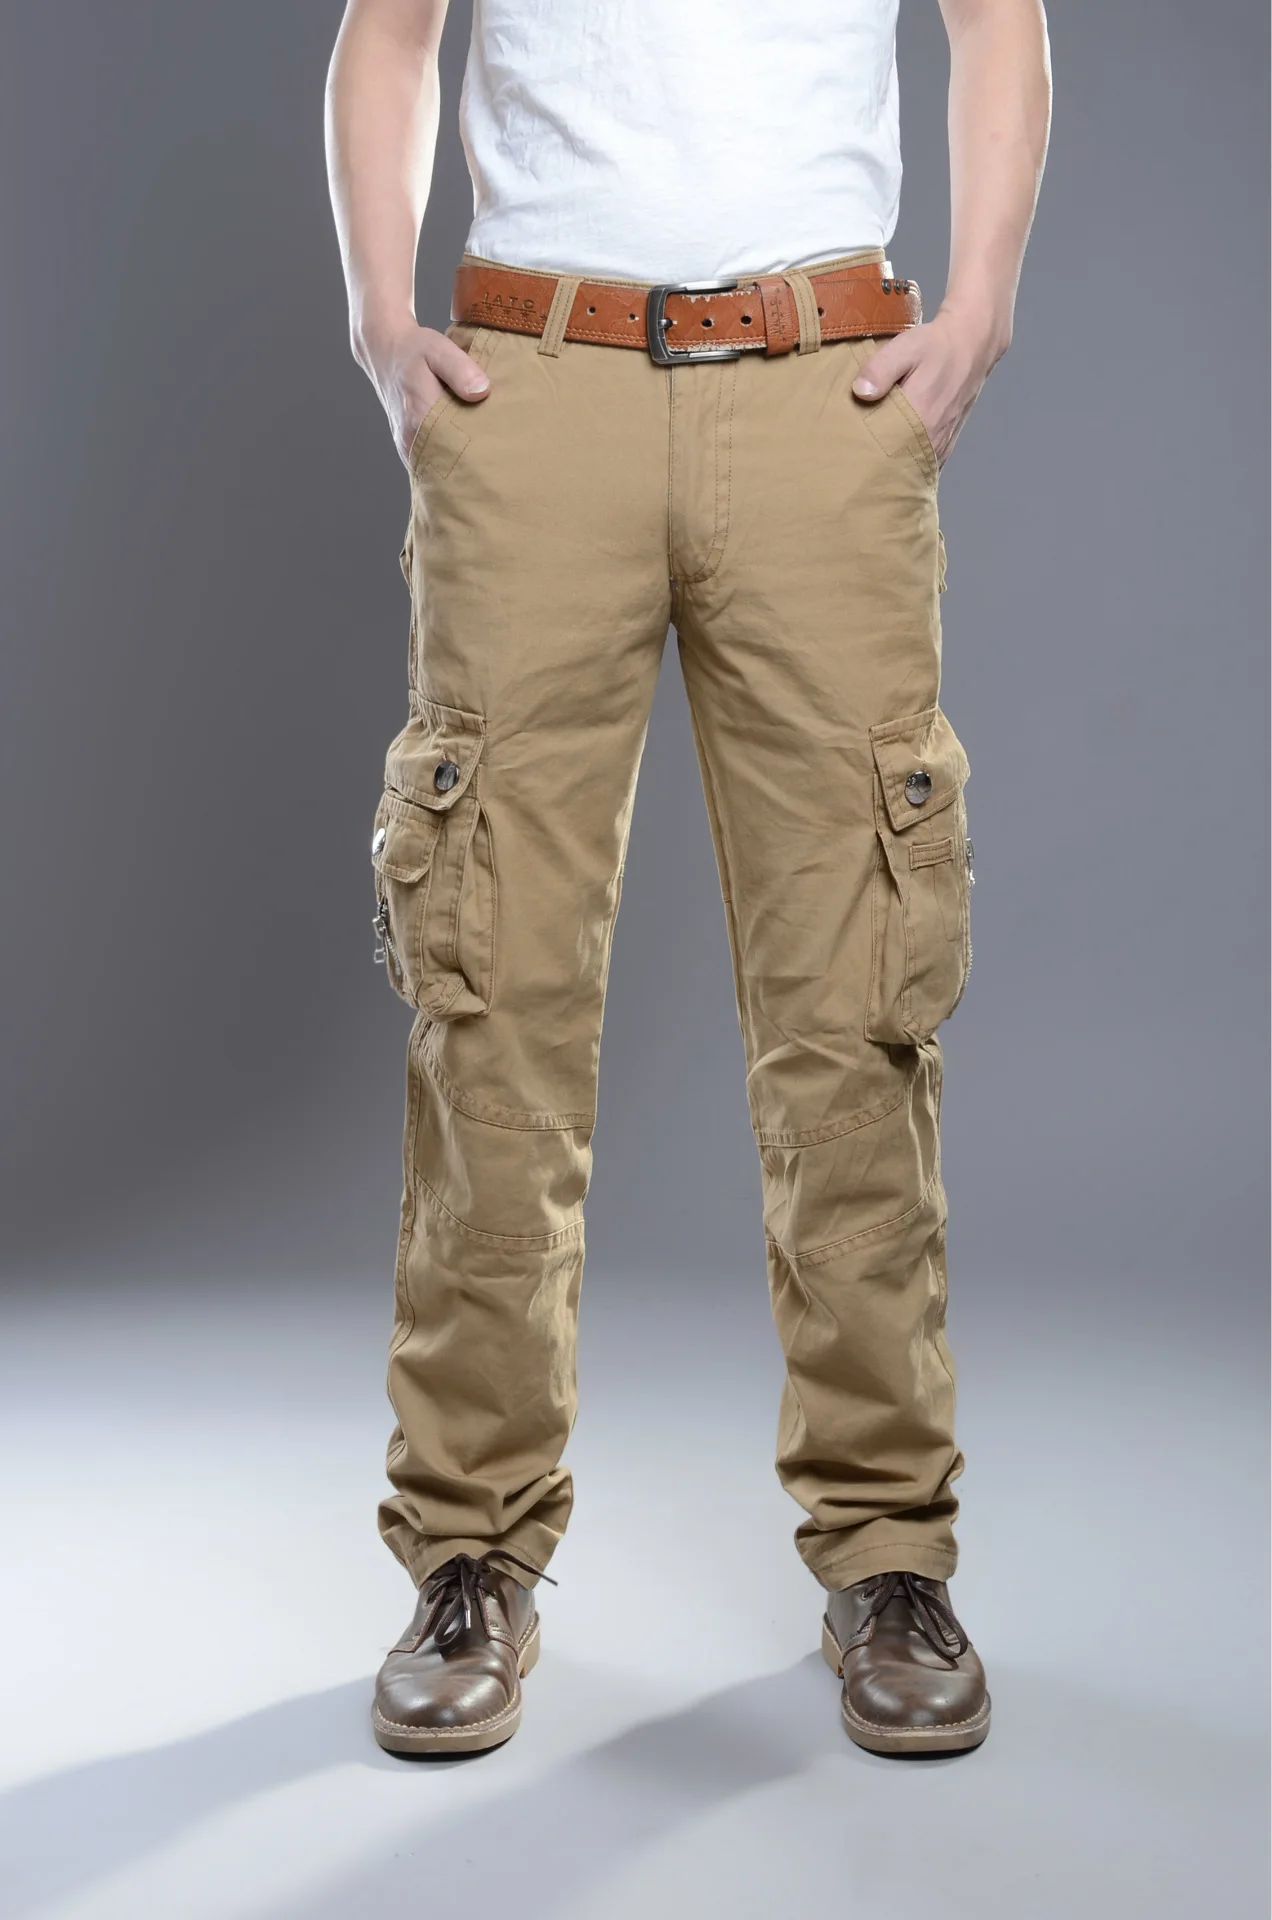 Высокое качество Nisexper Новая мода Для мужчин s военные брюки-карго Для мужчин брюки дышащие летние с карманами длинные брюки для большой